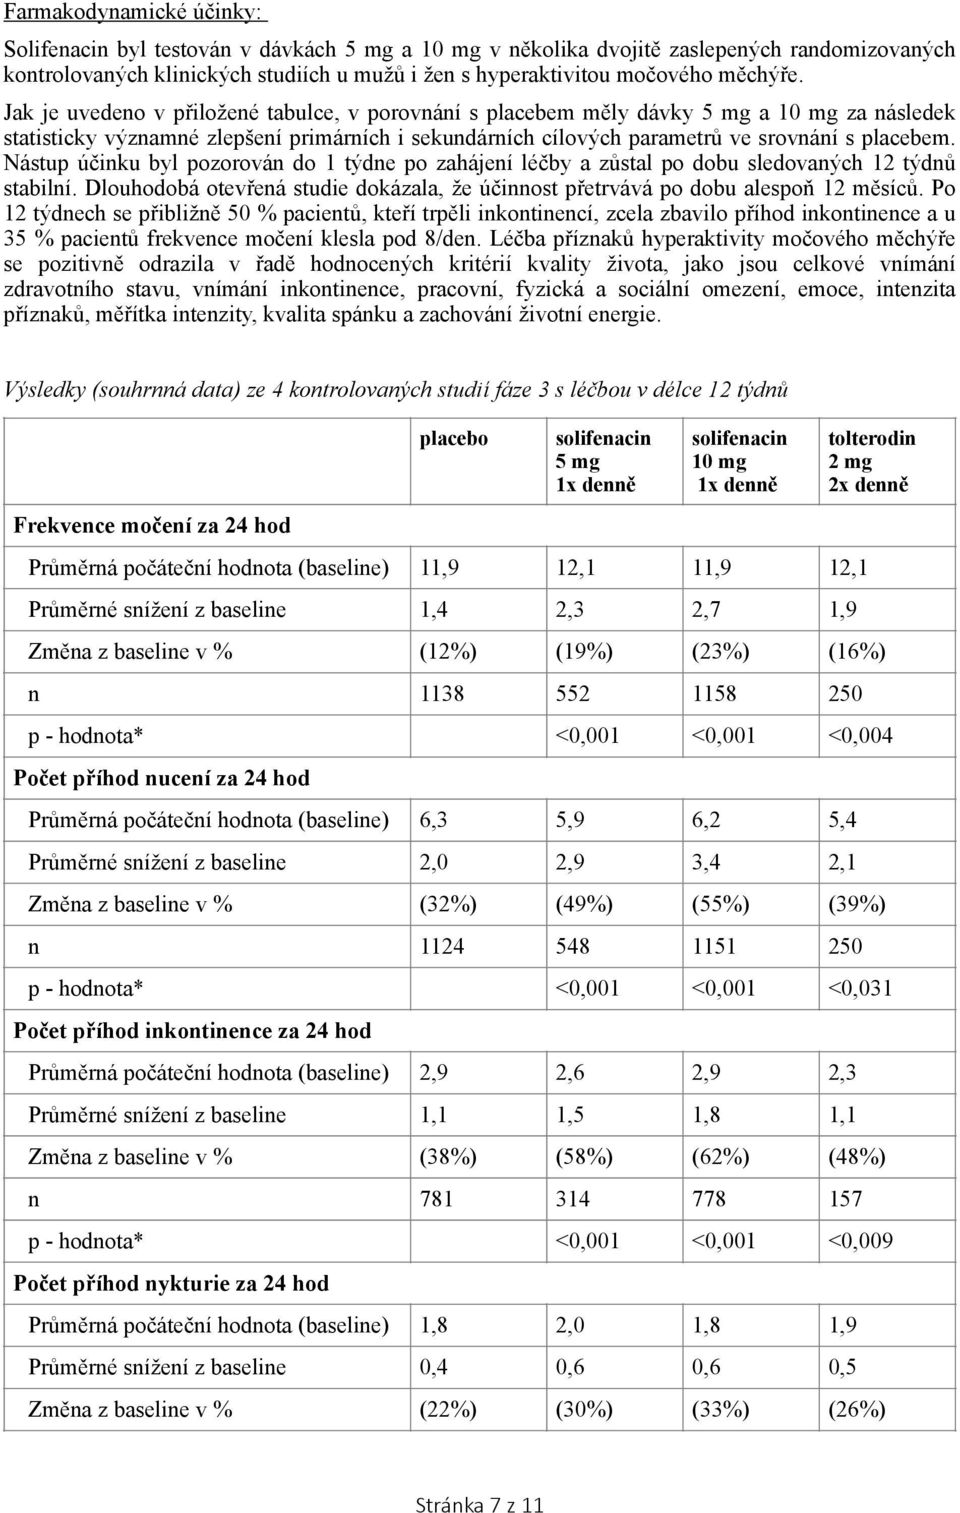 Jak je uvedeno v přiložené tabulce, v porovnání s placebem měly dávky 5 mg a 10 mg za následek statisticky významné zlepšení primárních i sekundárních cílových parametrů ve srovnání s placebem.